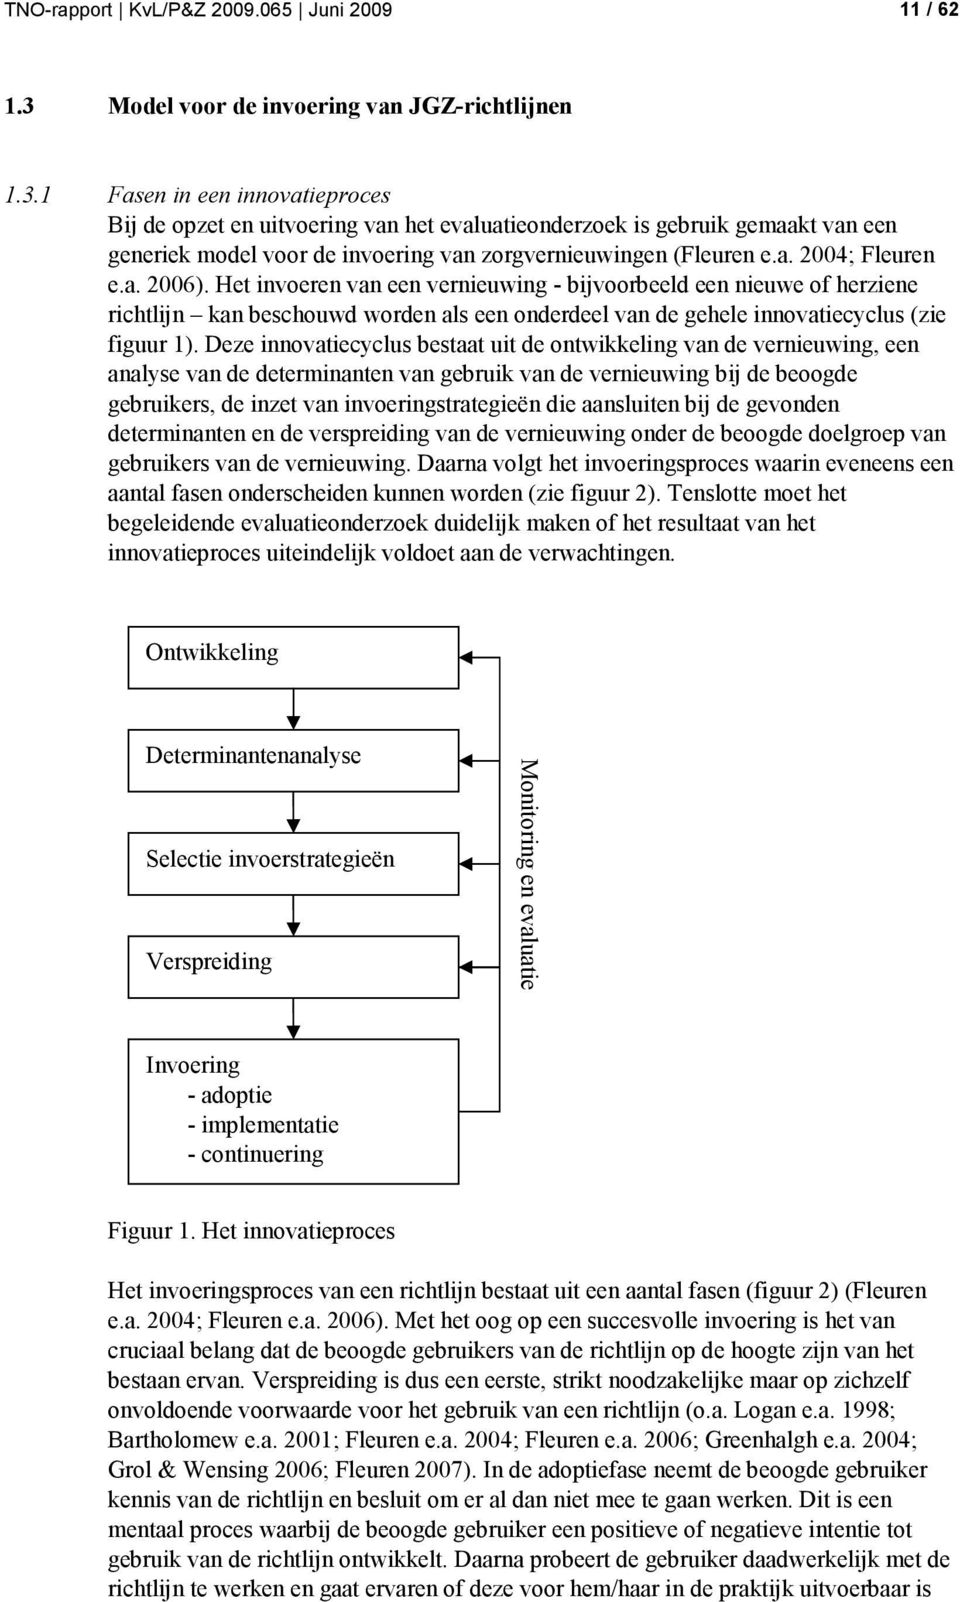 1 Fasen in een innovatieproces Bij de opzet en uitvoering van het evaluatieonderzoek is gebruik gemaakt van een generiek model voor de invoering van zorgvernieuwingen (Fleuren e.a. 2004; Fleuren e.a. 2006).